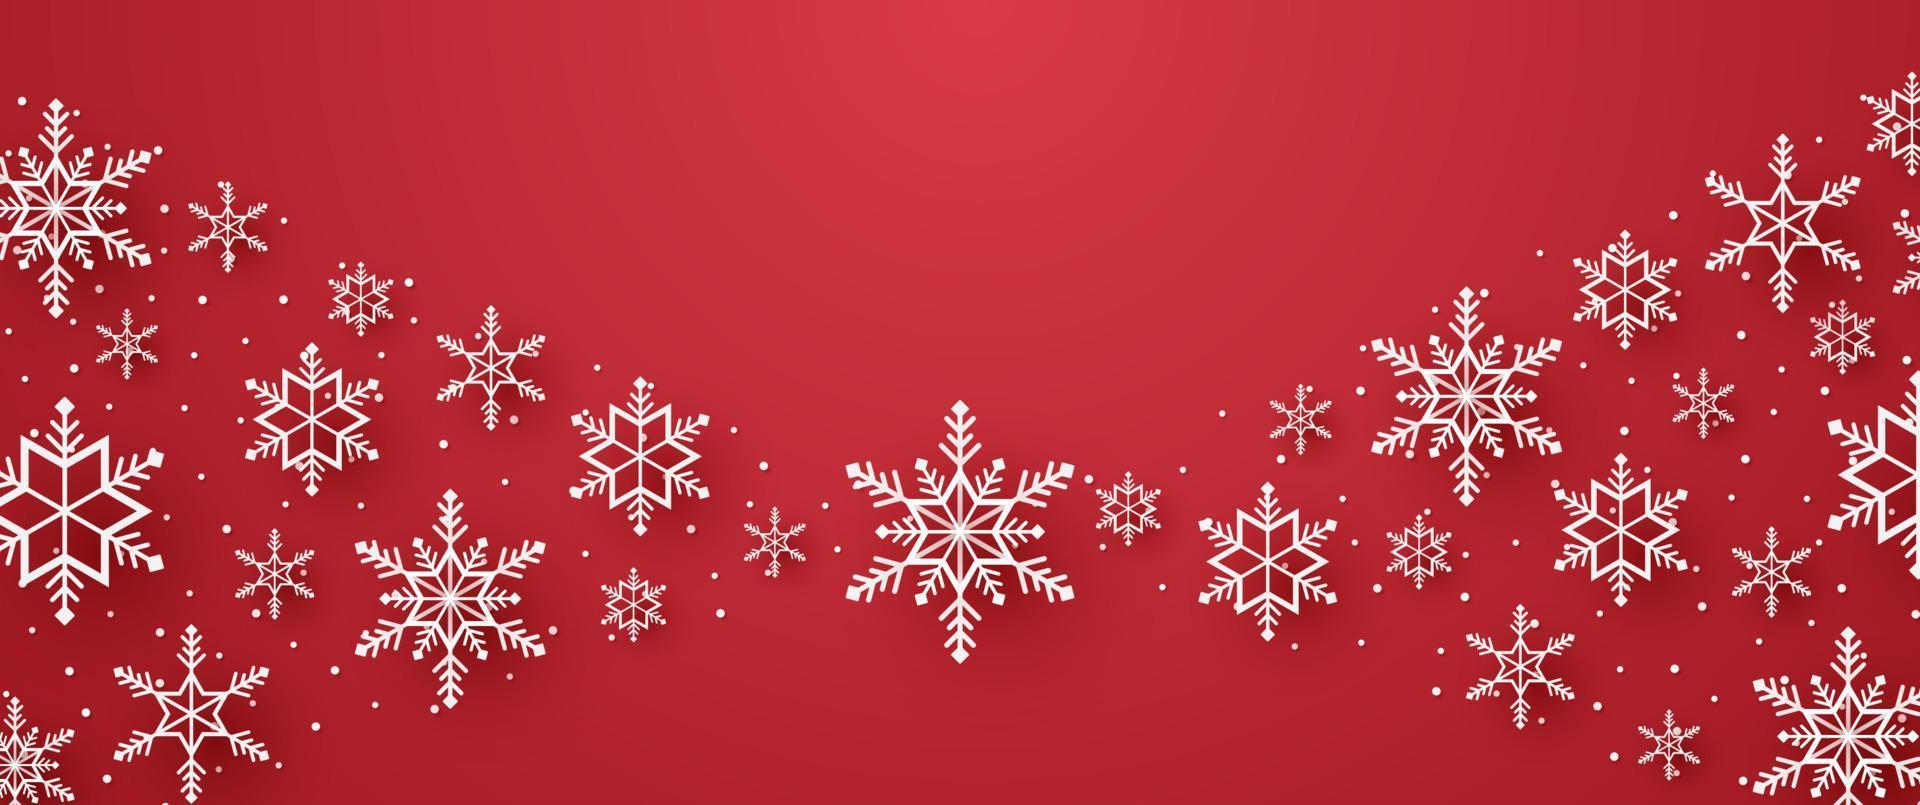 Frohe Weihnachten, Schneeflocken und Schnee mit Leerzeichen im Papierkunststil vektor